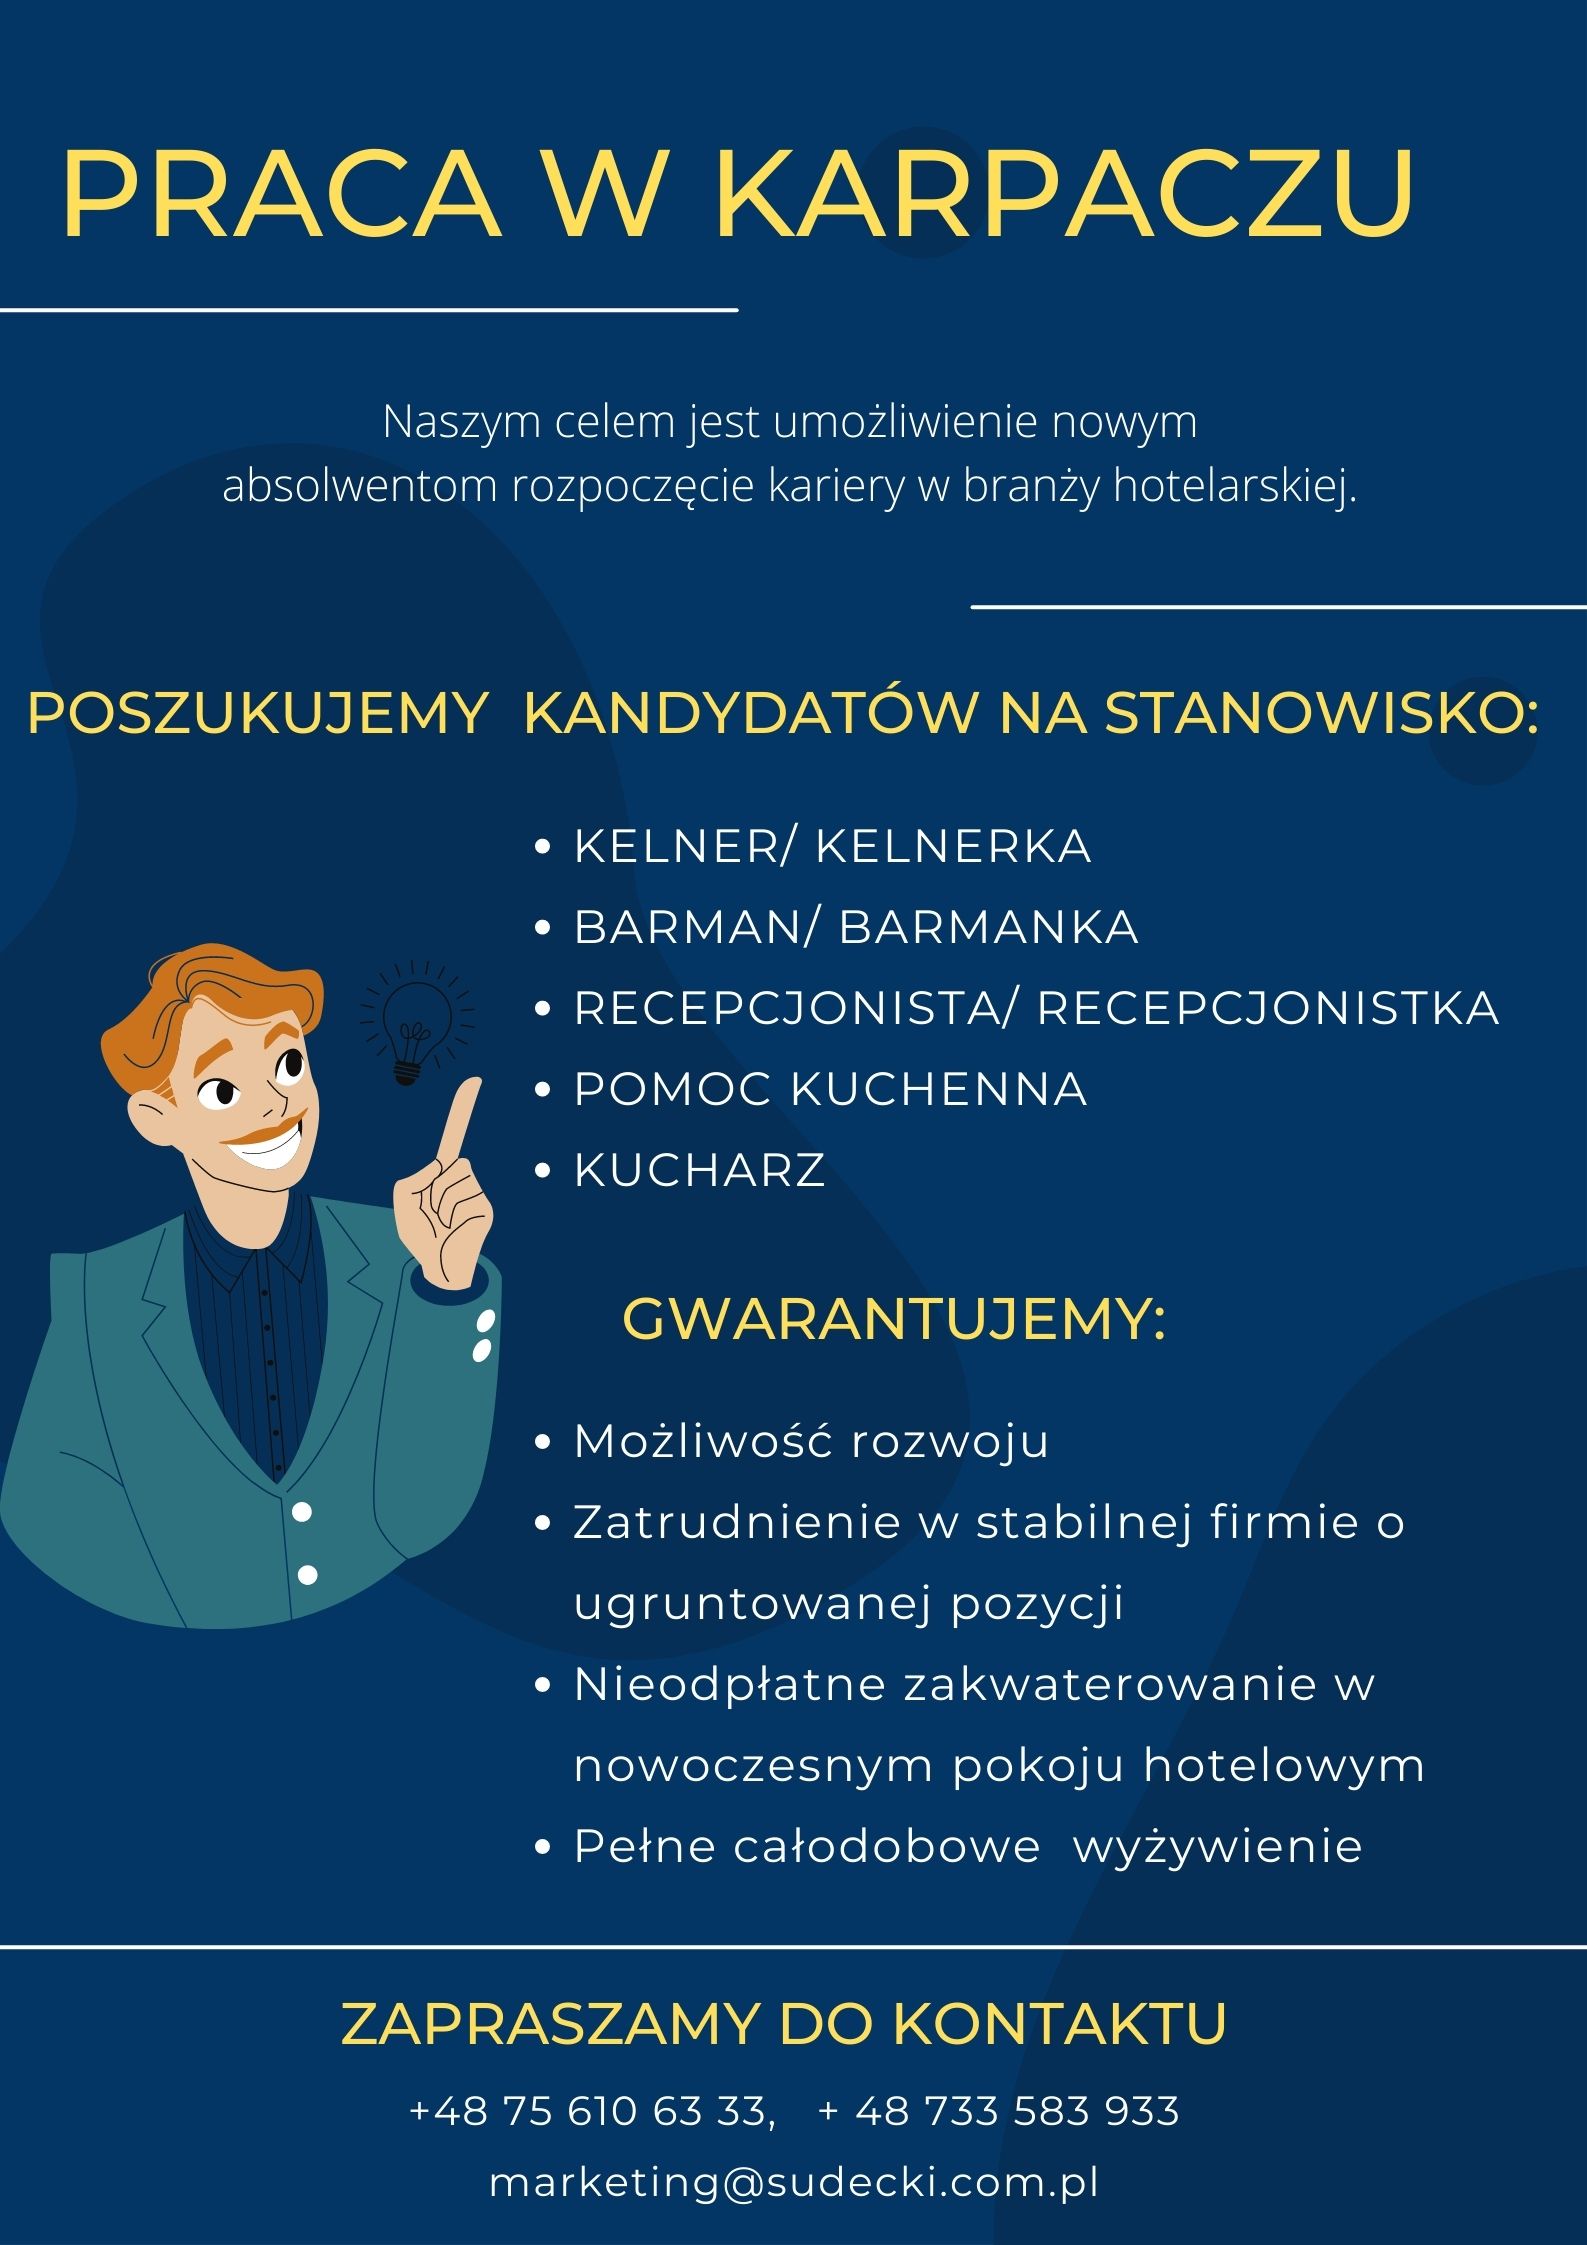 Plakat informujący o pracy w Karpaczu